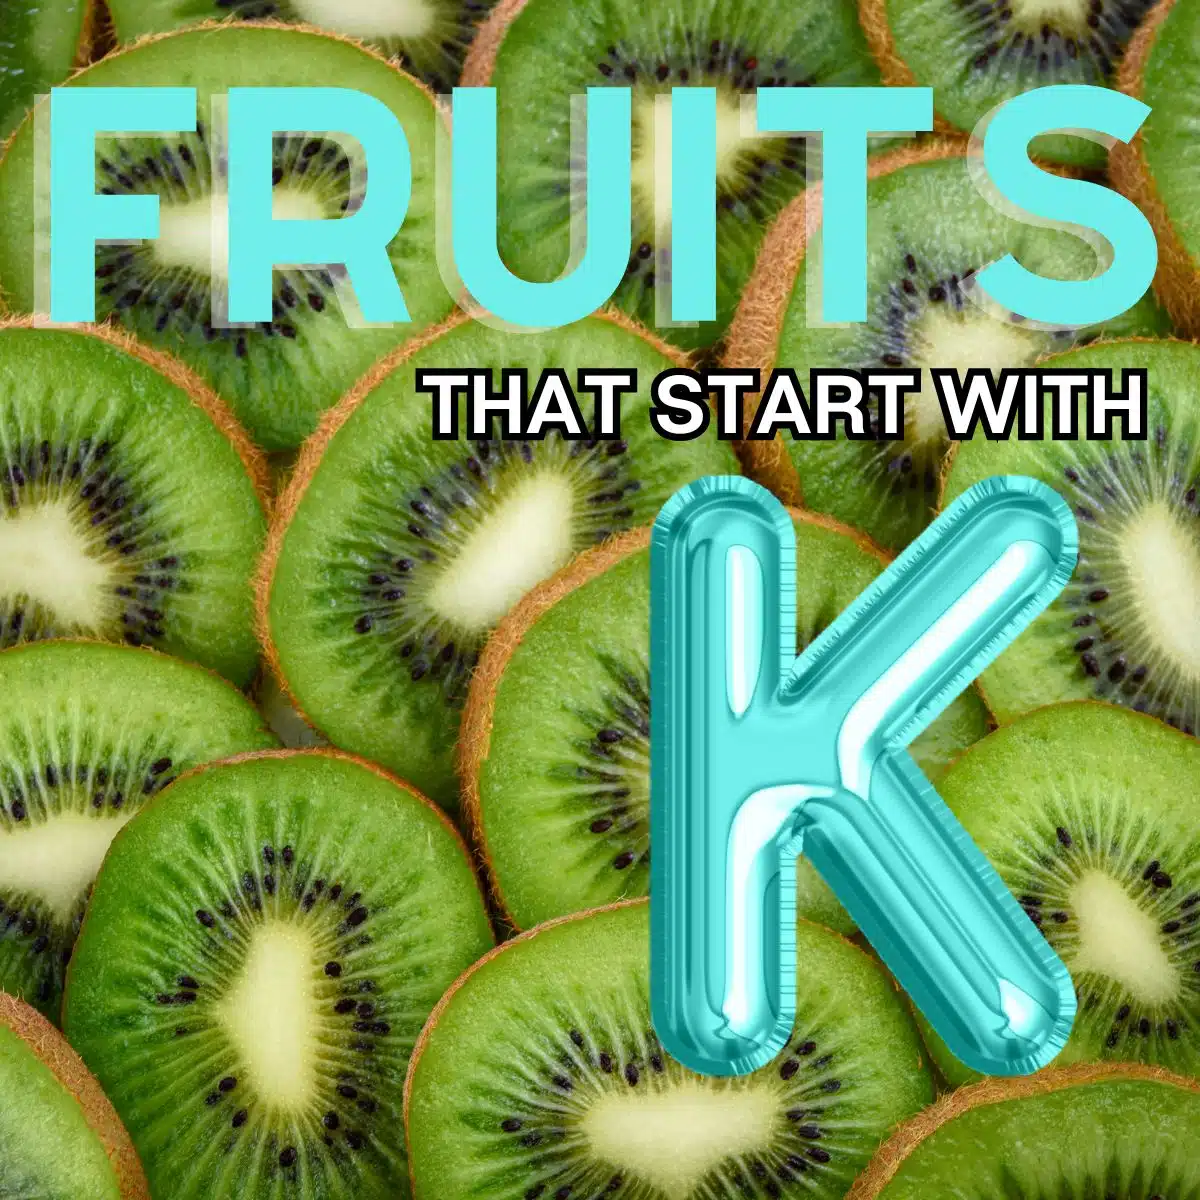 Čtvercový obrázek pro ovoce začínající písmenem K s kiwi.